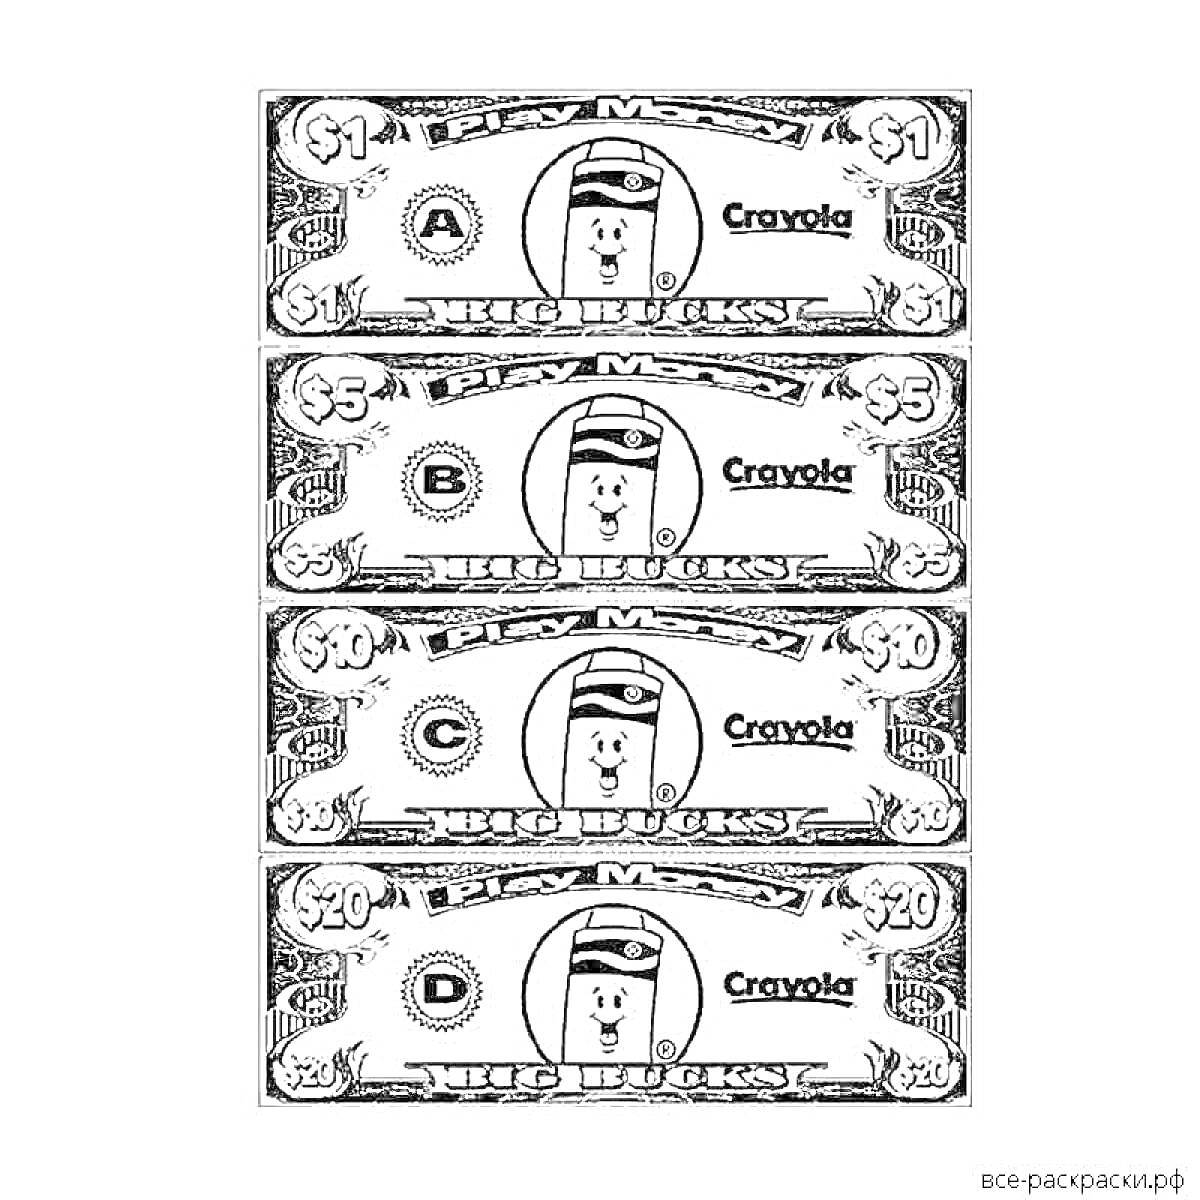 Раскраска Раскраска с изображением четырех денежных купюр номиналом $1, $5, $10 и $20, с изображением медведя в шляпе и логотипом Crayola